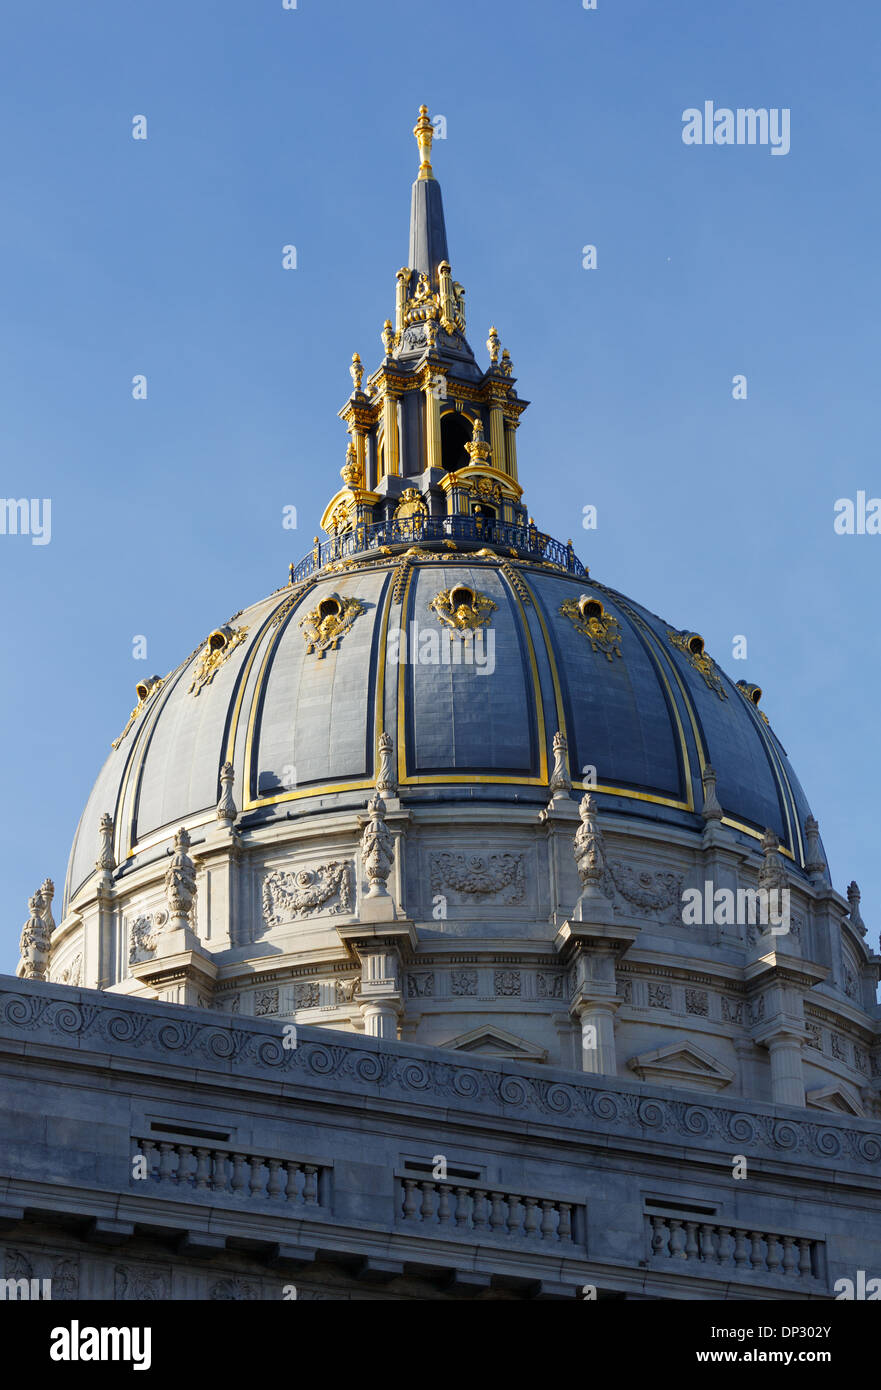 L'Hôtel de ville de San Francisco dispose d'un dôme avec une pinnacle doré sur le dessus. Le dôme est le cinquième plus grand au monde. Banque D'Images